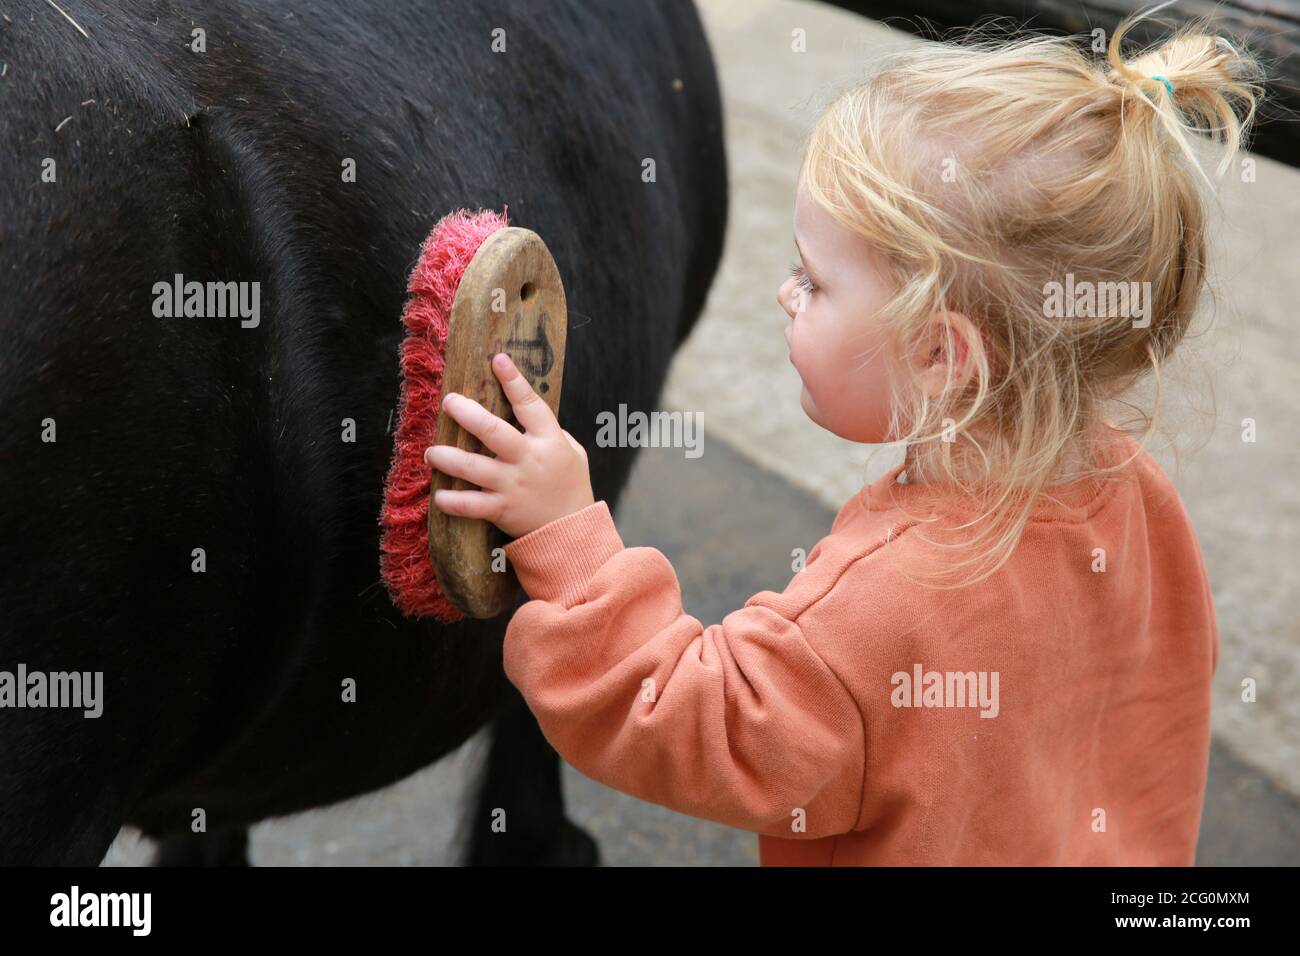 Petite fille poney à cheval dans une écurie, France Banque D'Images